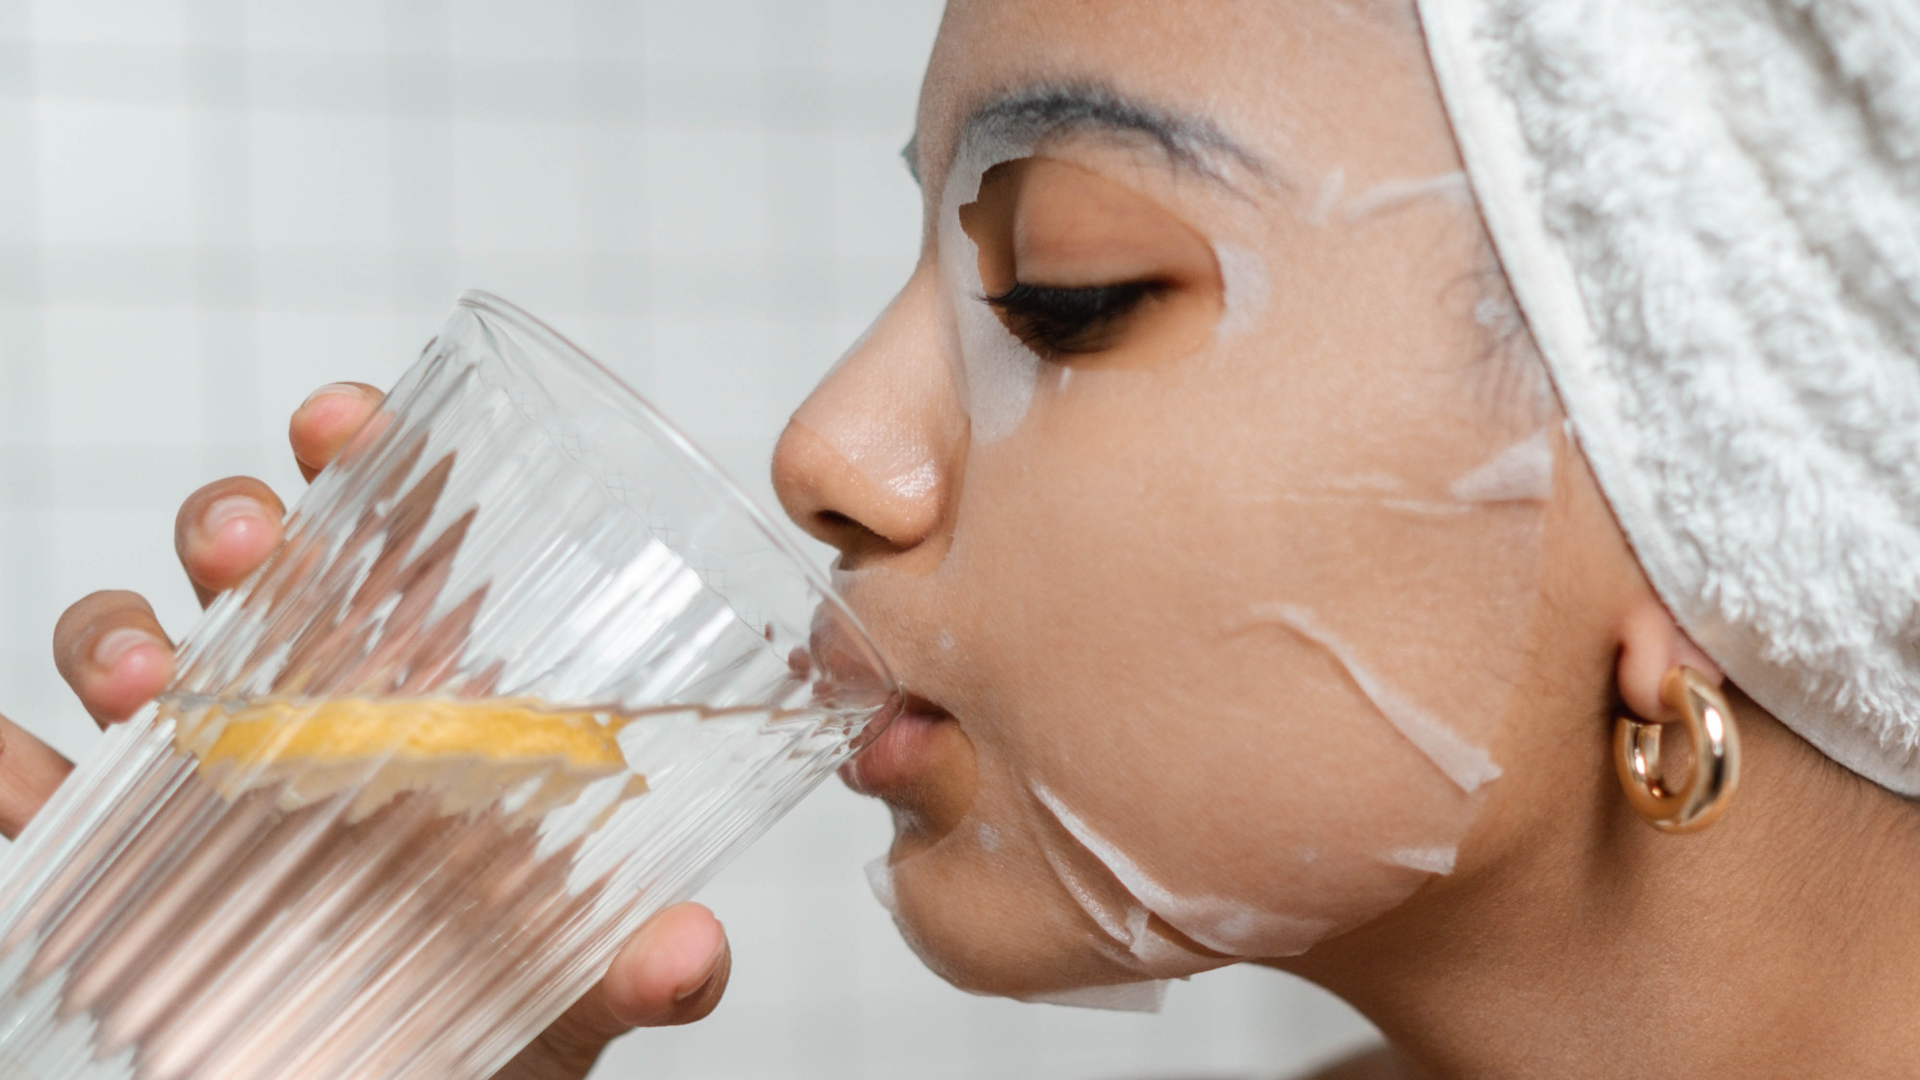 TRINK DICH SCHÖN - Kann Wasser trinken die Haut wirklich zum Strahlen bringen?